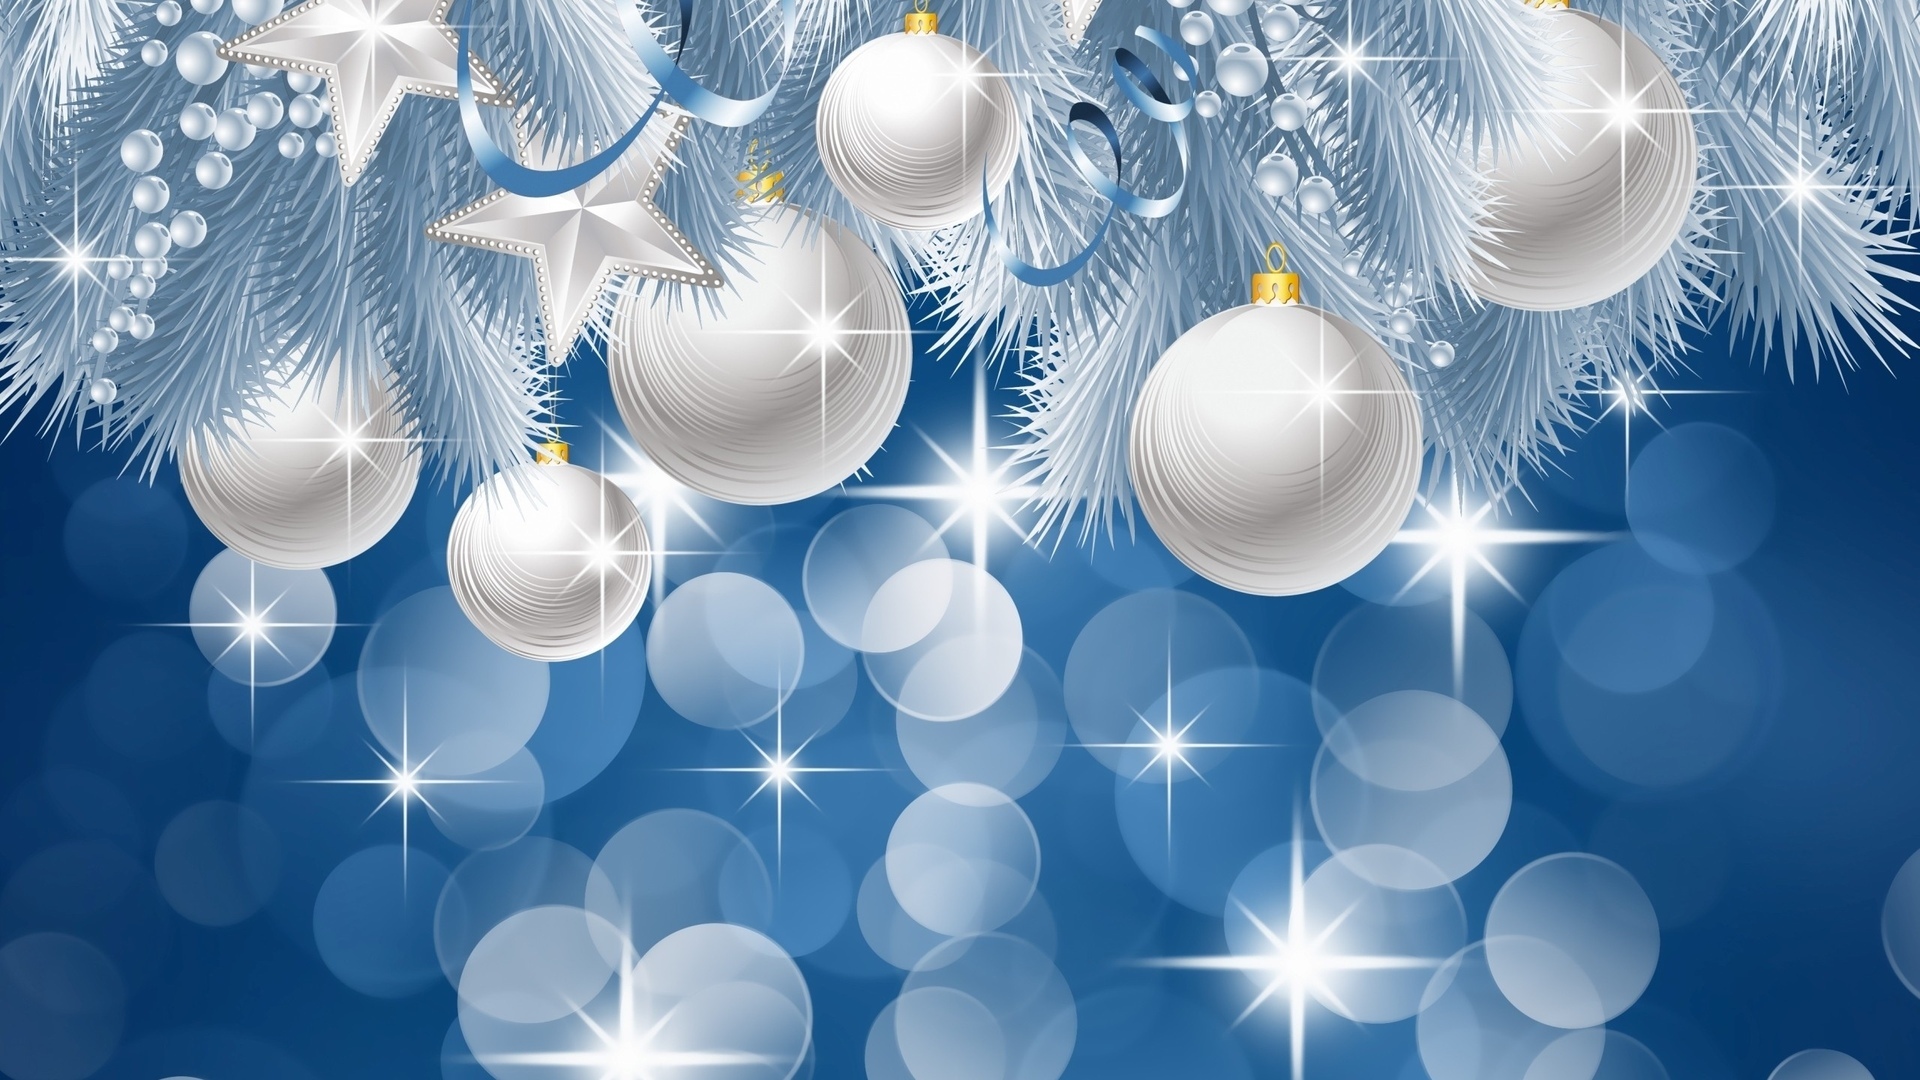 Скачать обои бесплатно Новый Год (New Year), Рождество (Christmas Xmas), Фон картинка на рабочий стол ПК